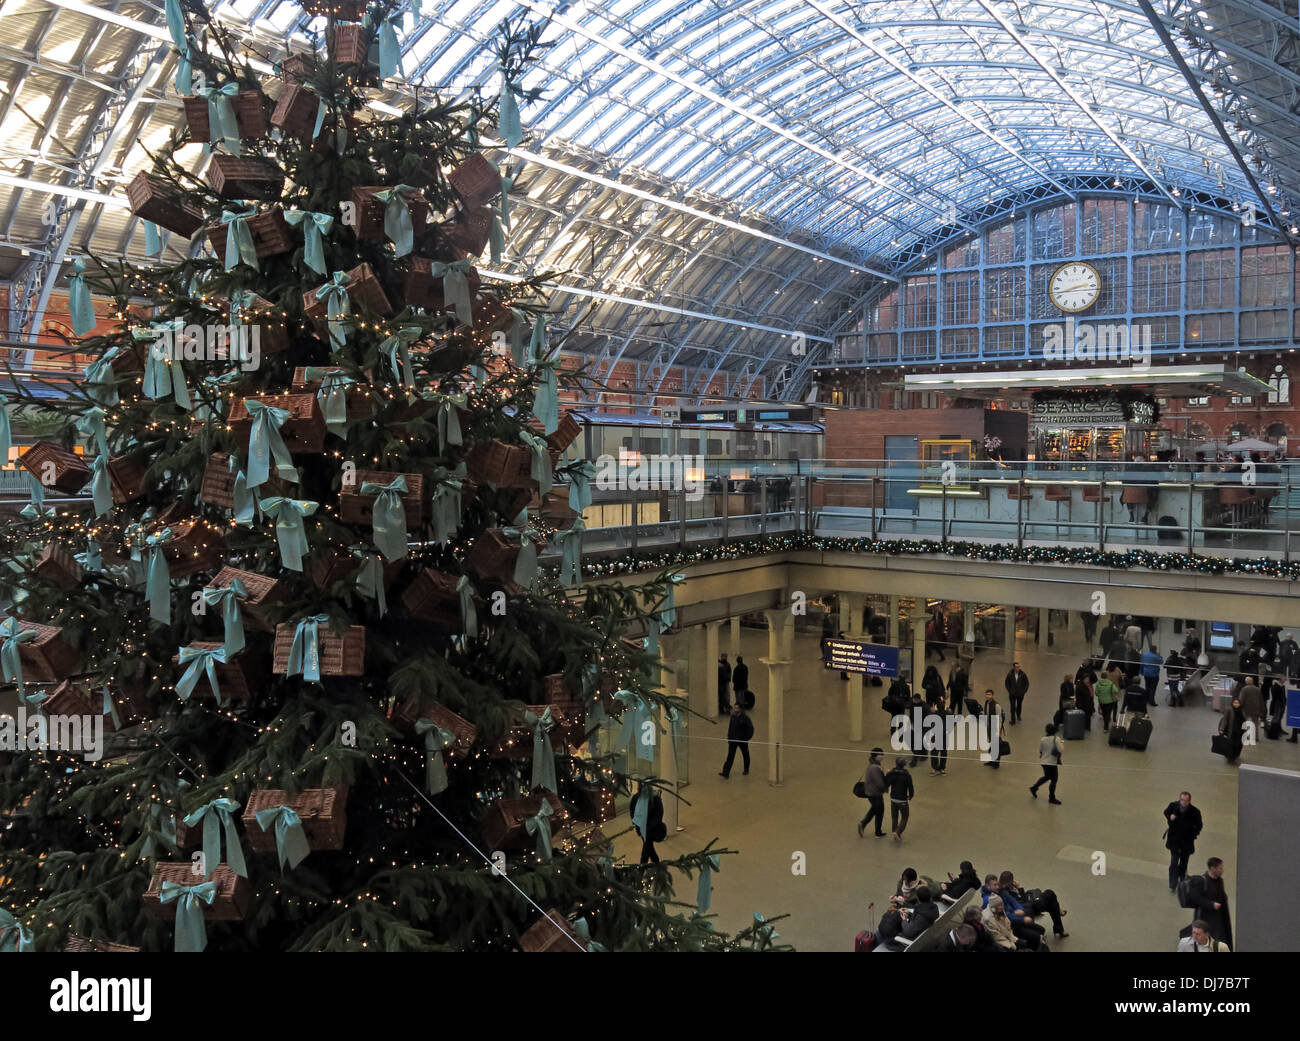 La gare de St Pancras à Londres Angleterre Royaume-uni Noël Banque D'Images